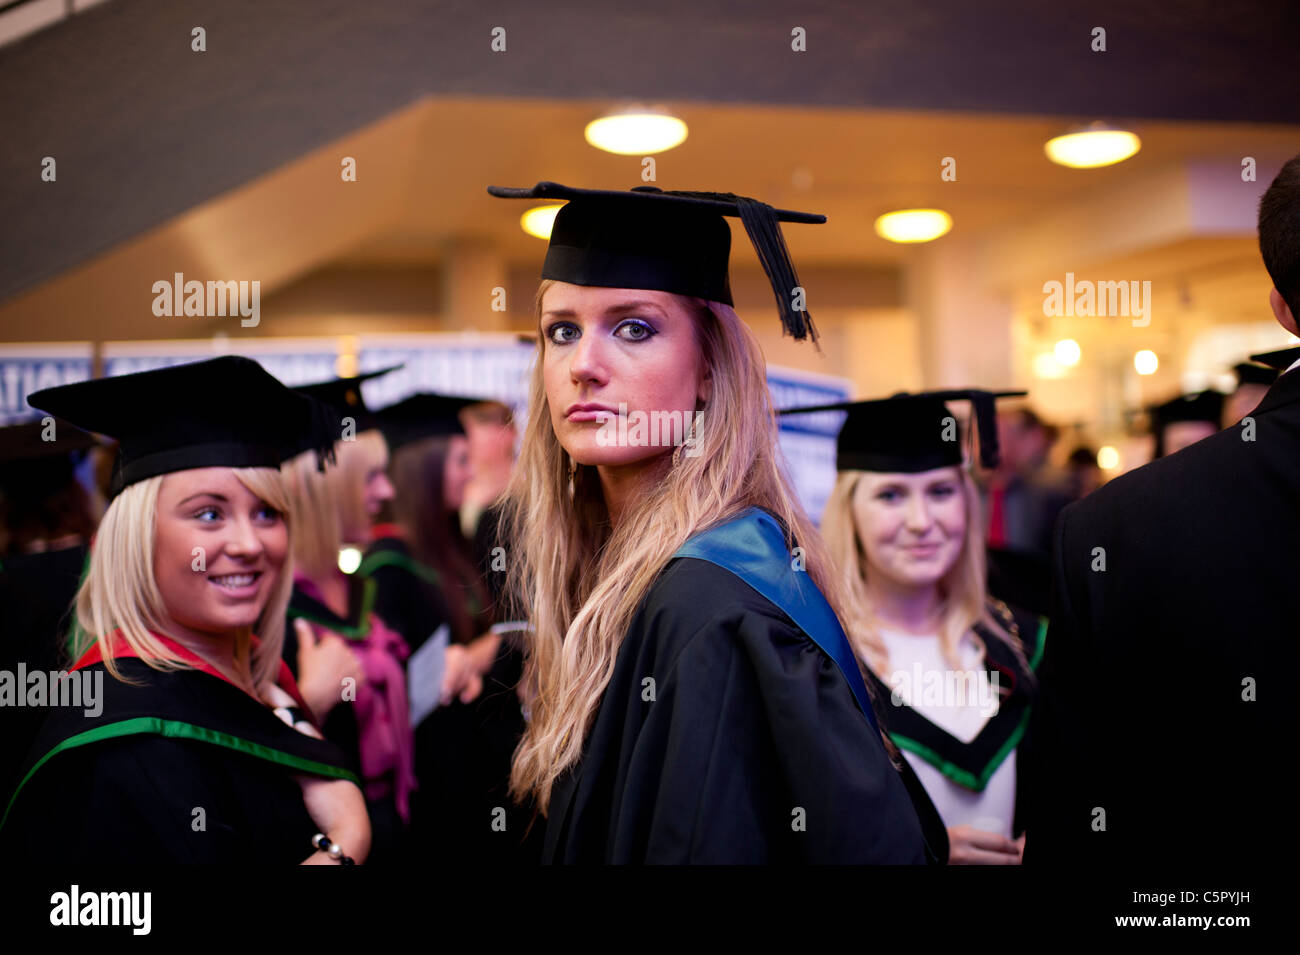 Les femmes Les femmes diplômées de l'université d'Aberystwyth le jour de la remise des diplômes, UK Banque D'Images